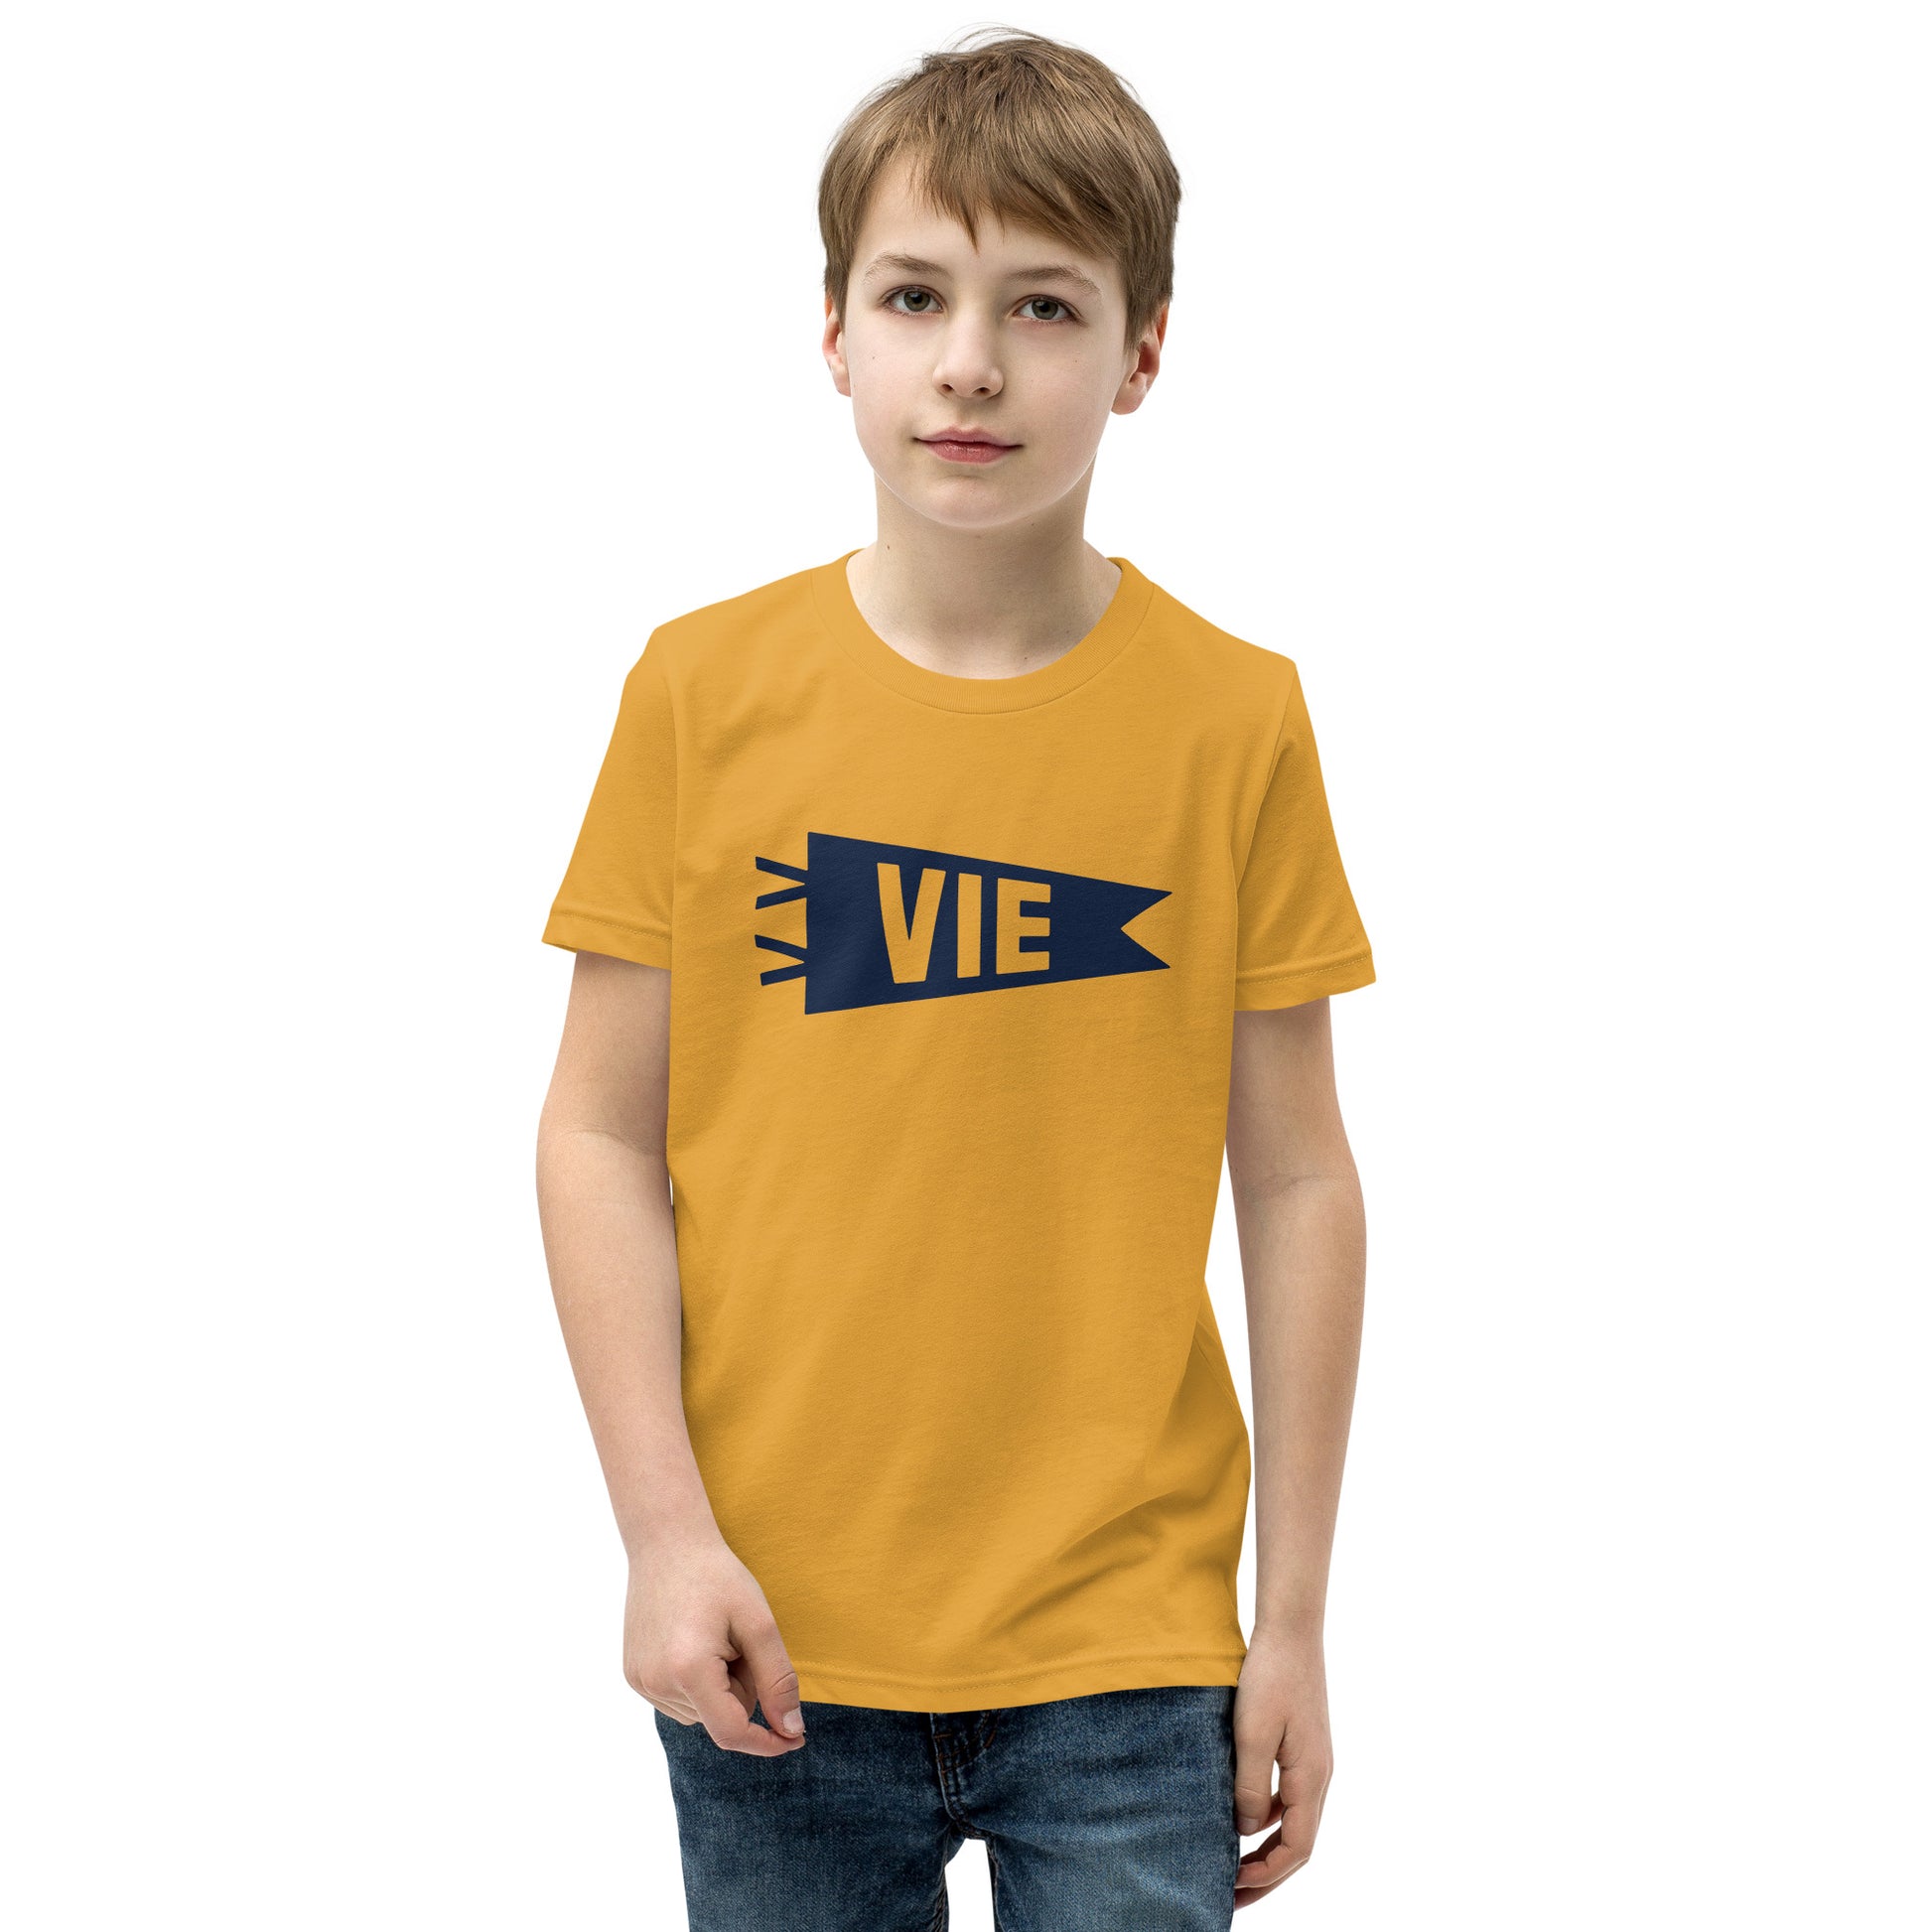 Kid's Airport Code Tee - Navy Blue Graphic • VIE Vienna • YHM Designs - Image 08